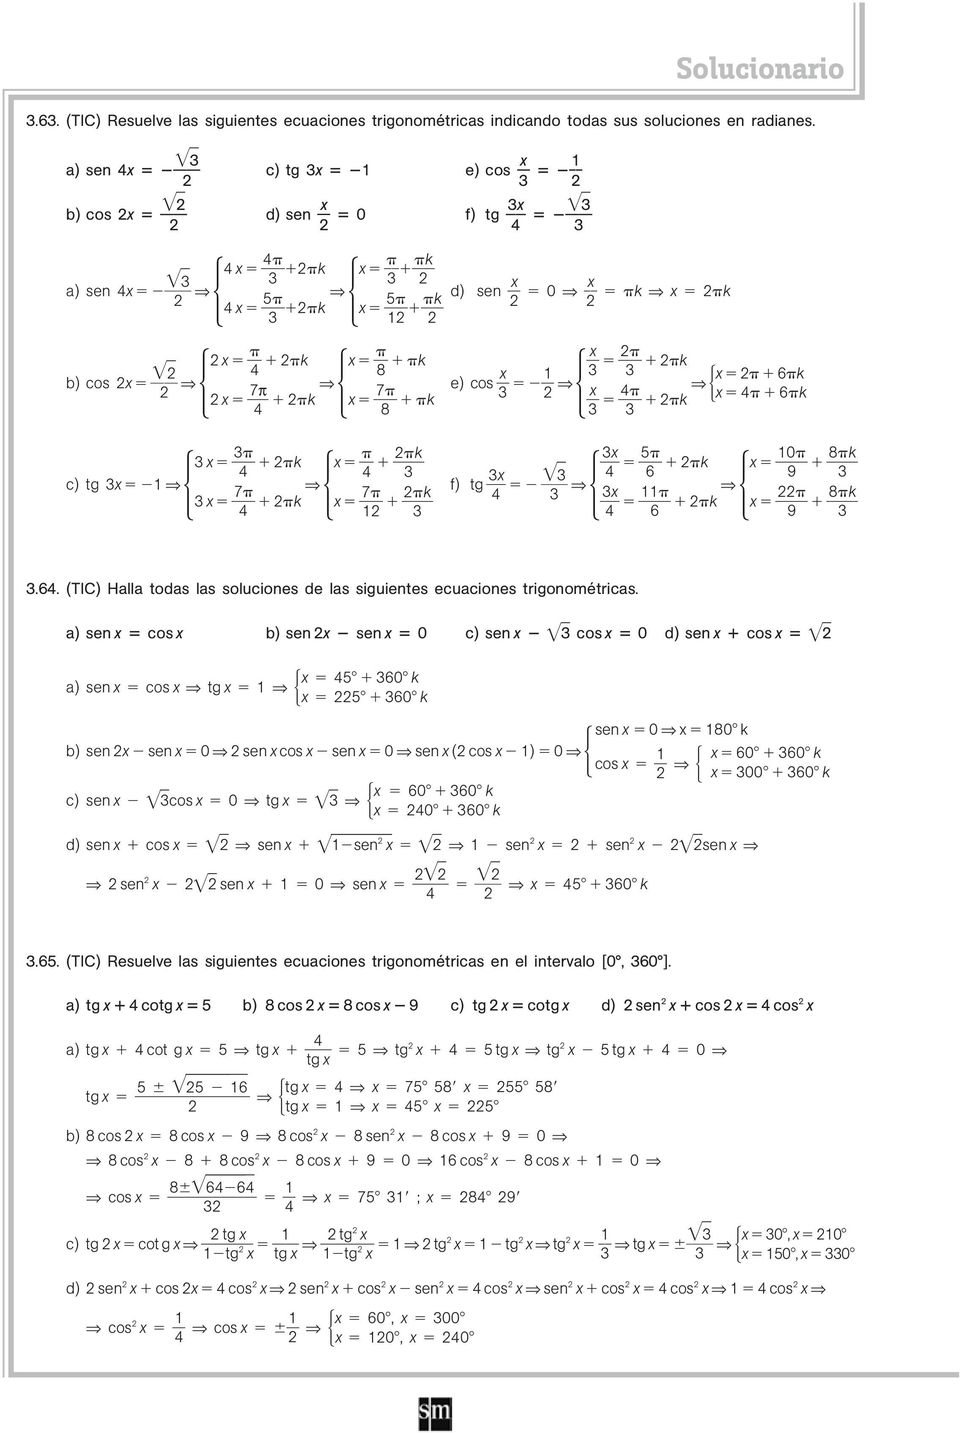 6k 0 8 k k 6 9 8 k k 6 9.6. (TIC) Halla todas las soluciones de las siguientes ecuaciones trigonométricas.